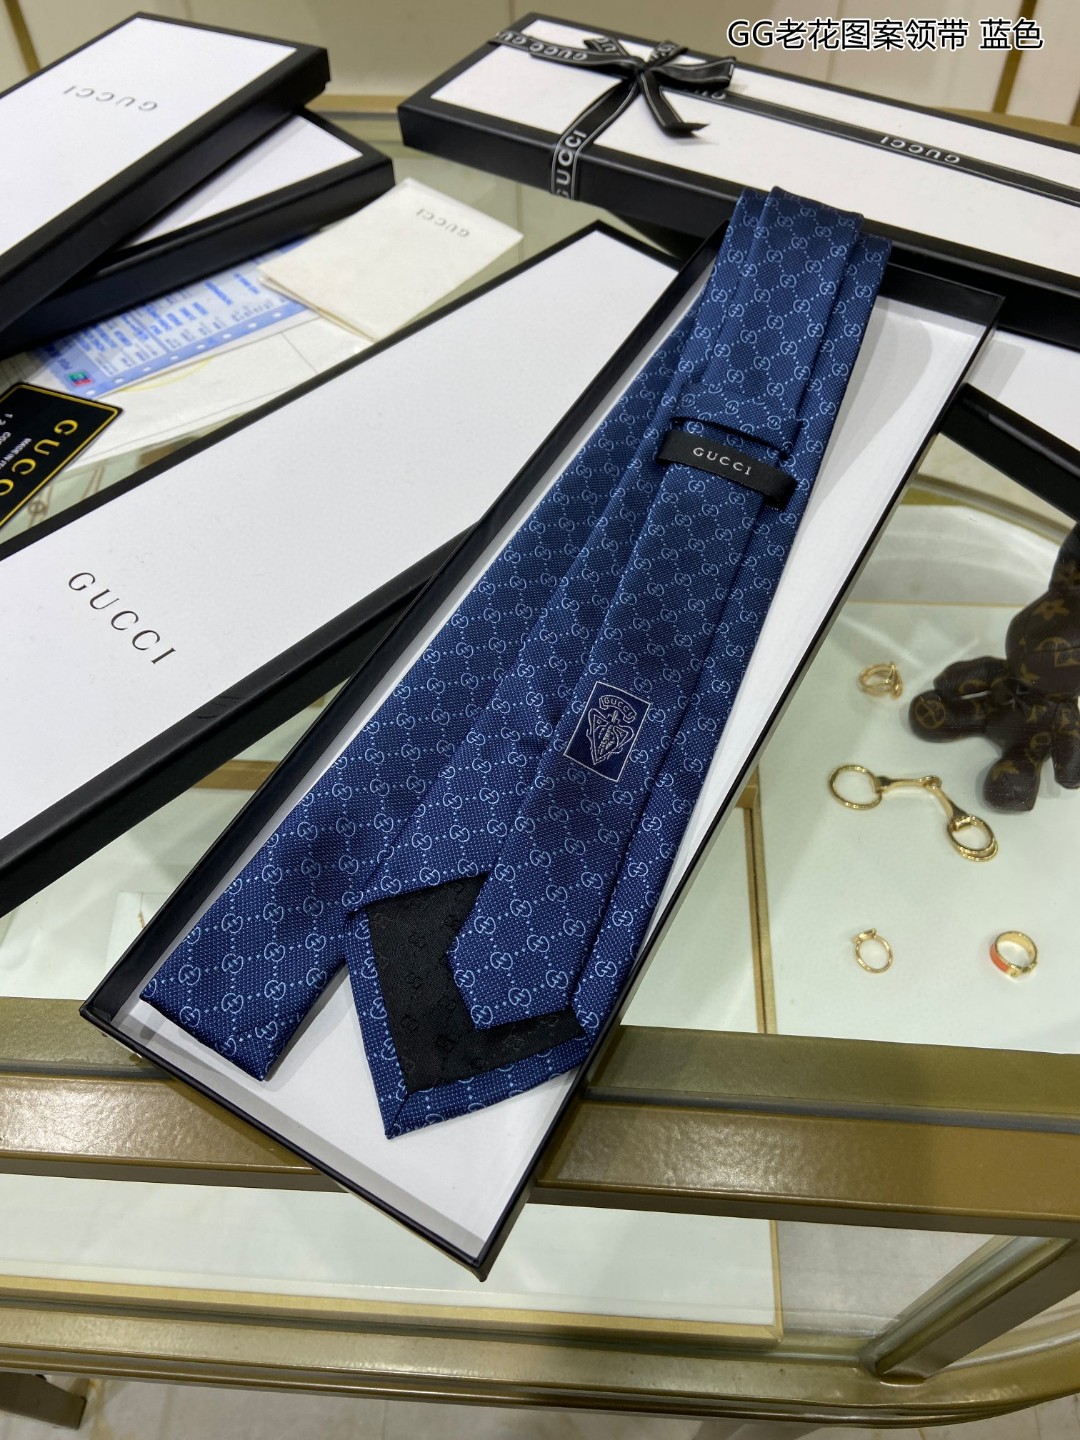 特价G家男士领带系列GG老花图案领带稀有采用经典小GLOGO提花展现精湛手工与时尚优雅的理想选择这款领带